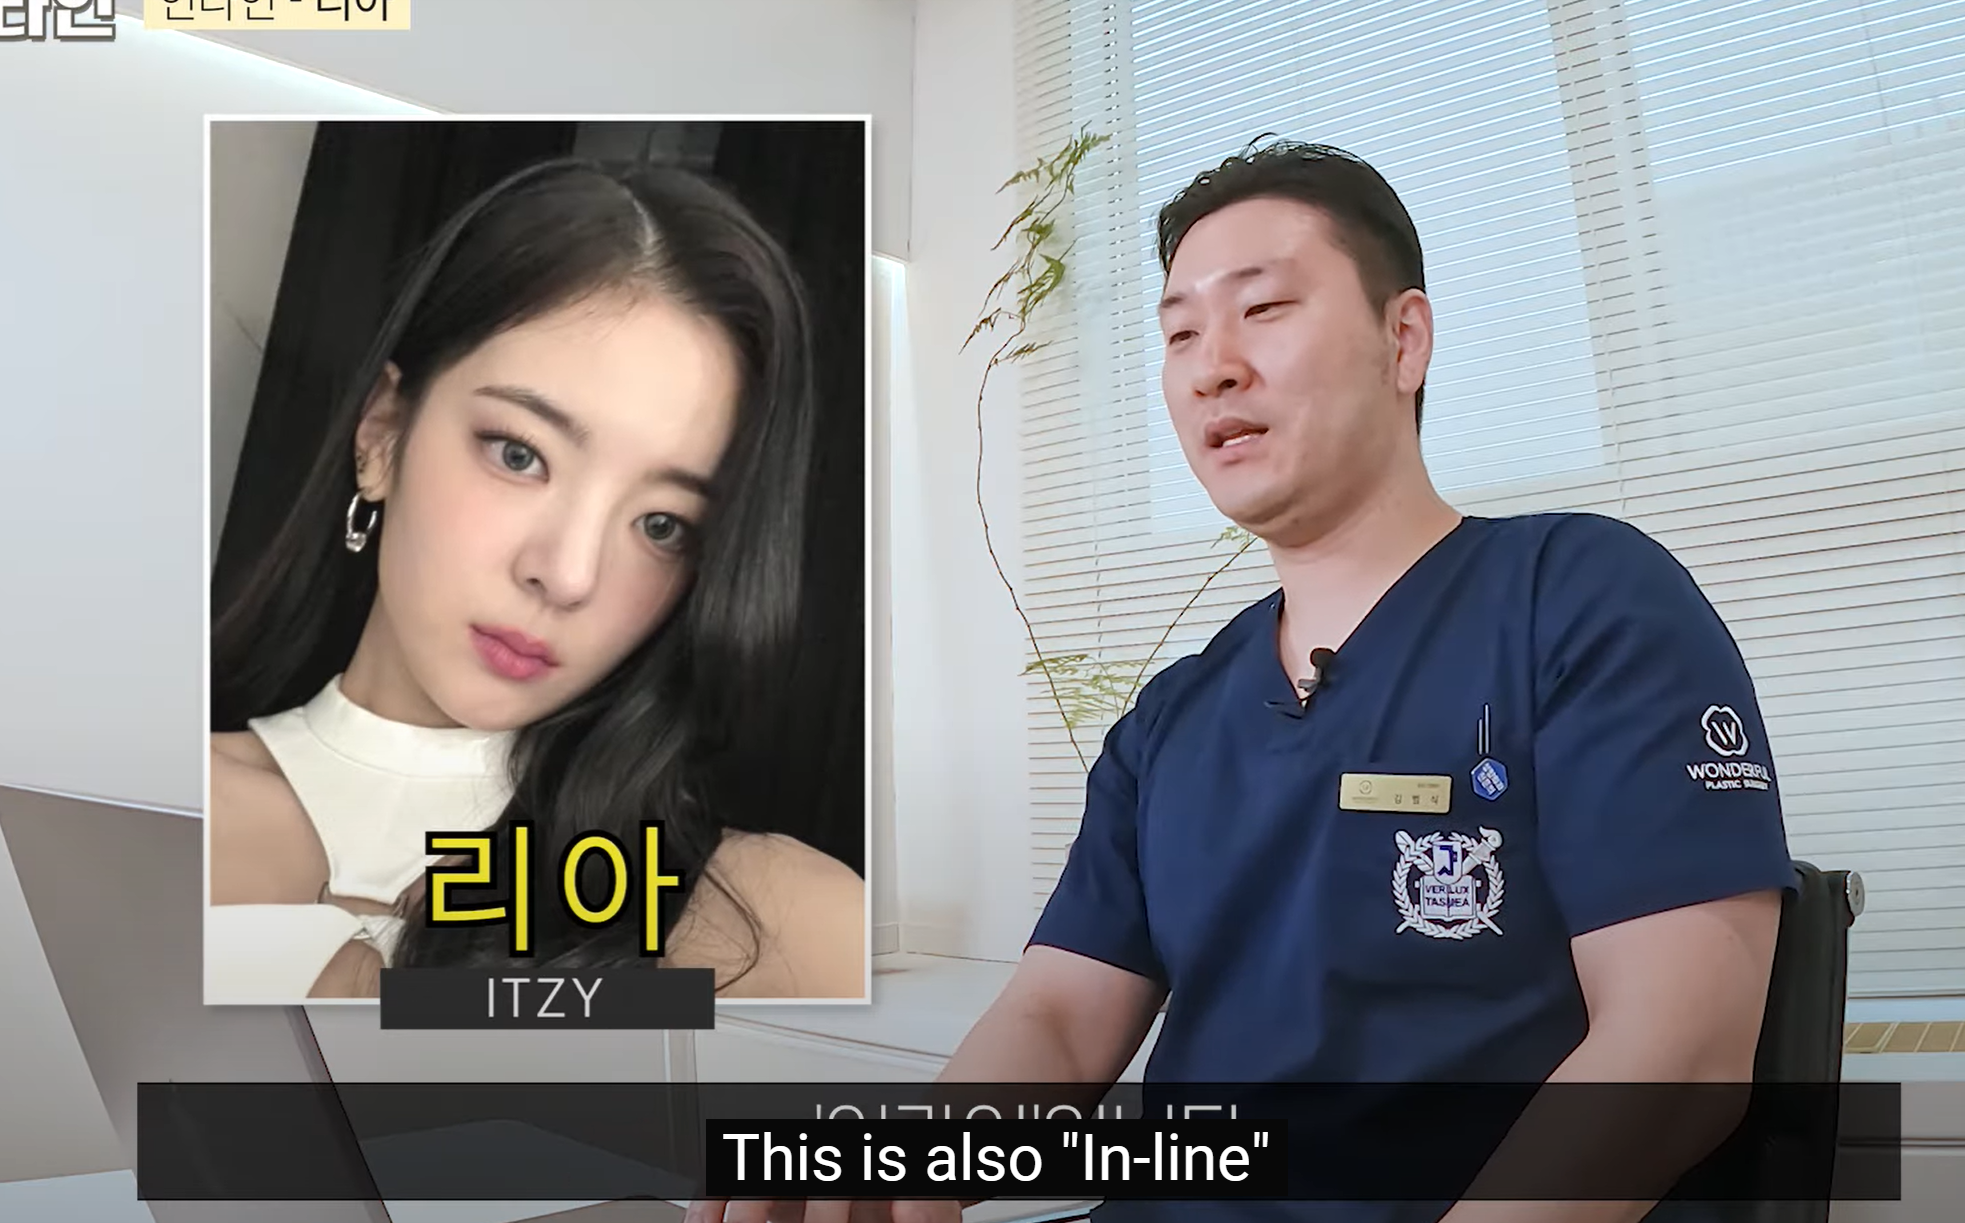 جراحة التجميل الرائعة في كوريا جراحة الجفن المزدوج في سيول